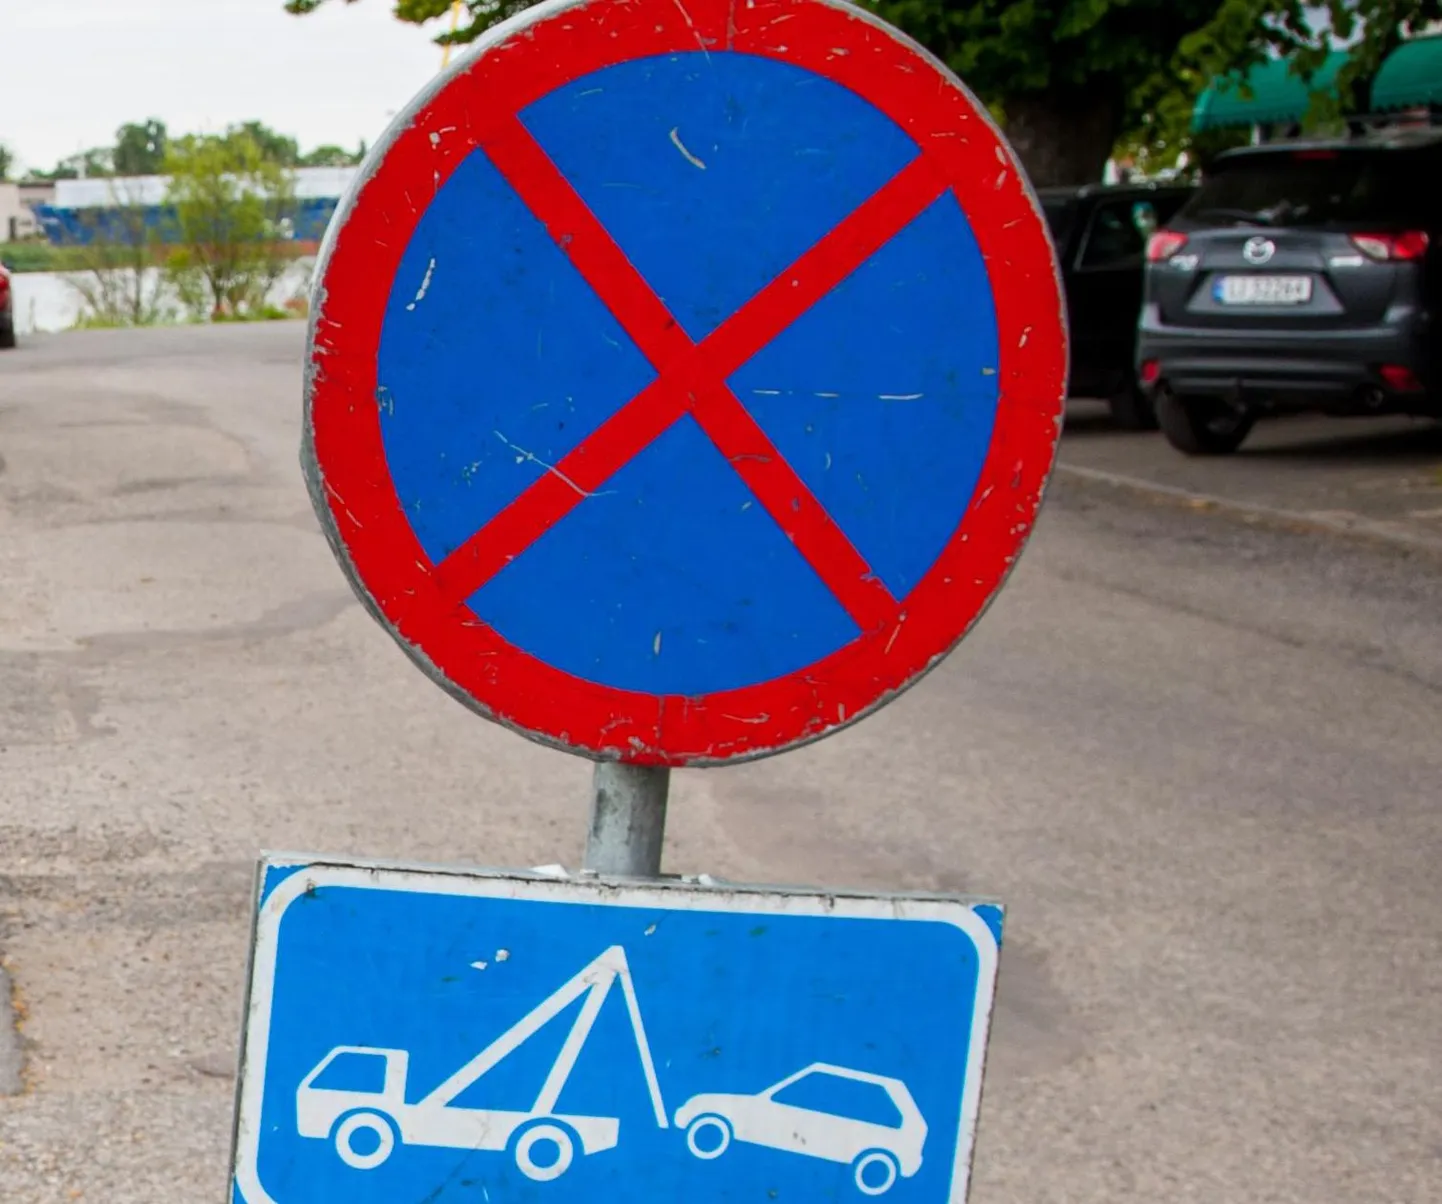 Sääse tänaval keelatakse poolteiseks kuuks parkimine. Foto on illustreeriv.